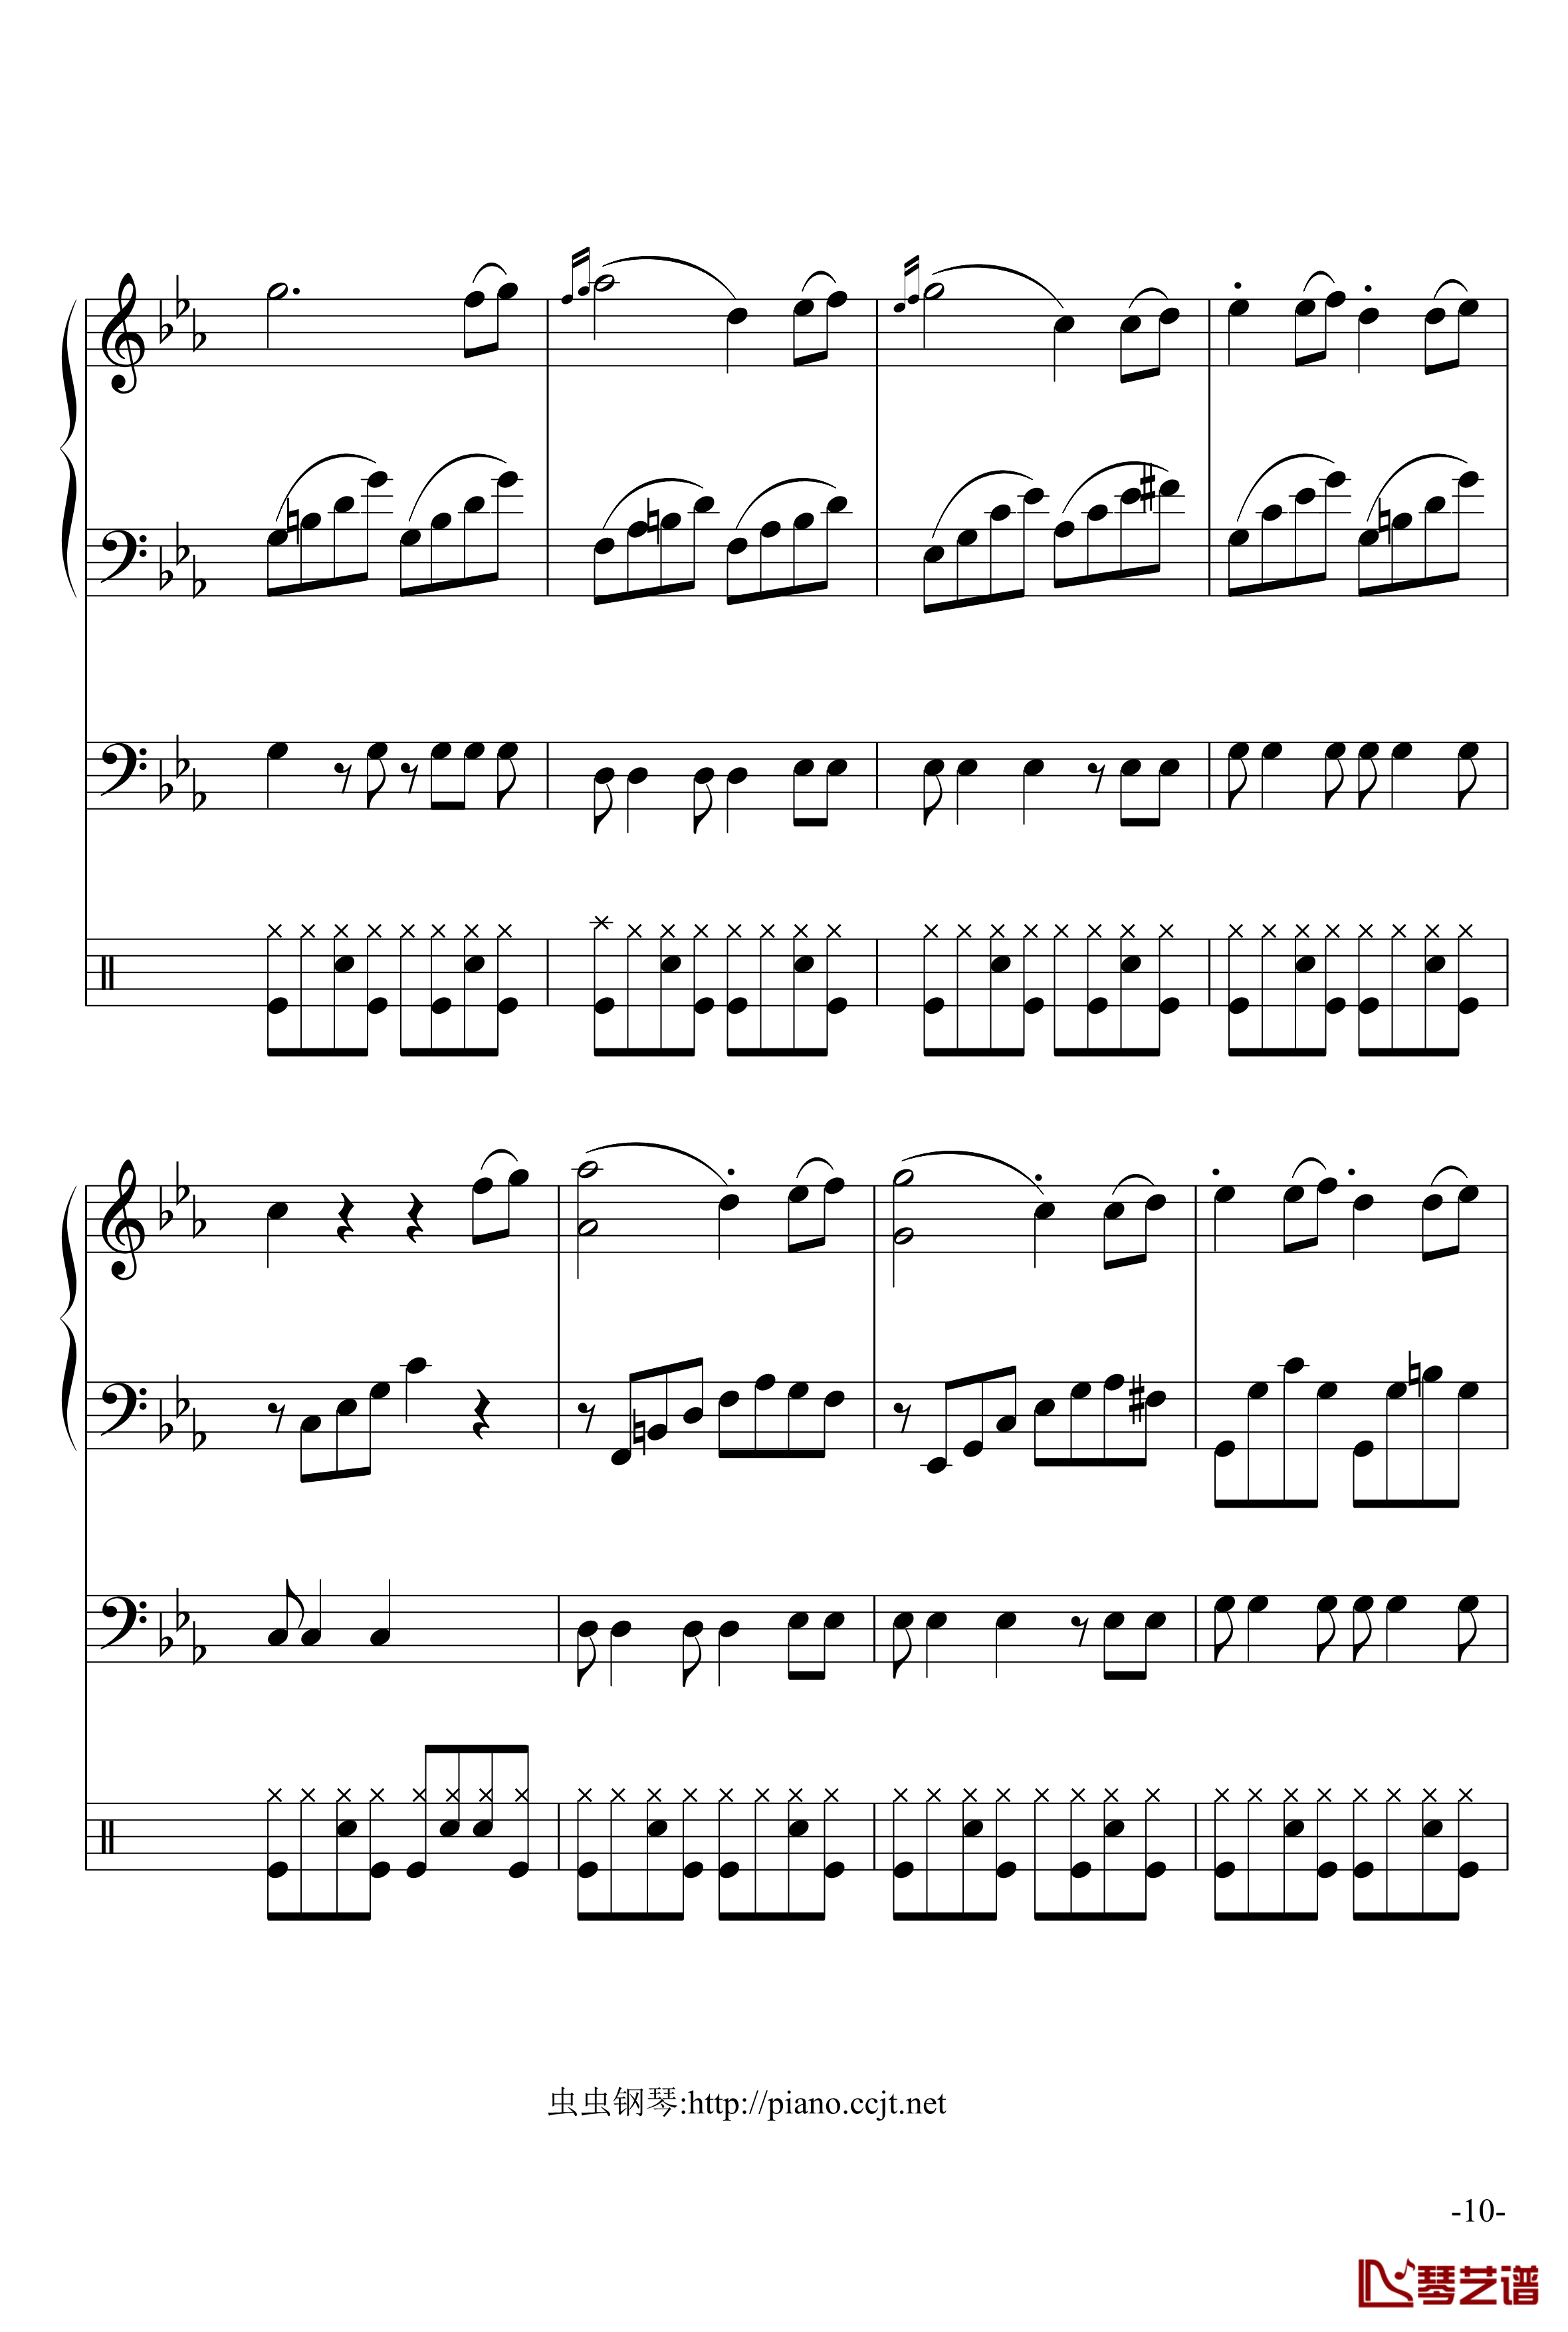 悲怆奏鸣曲钢琴谱-加小乐队-贝多芬-beethoven10